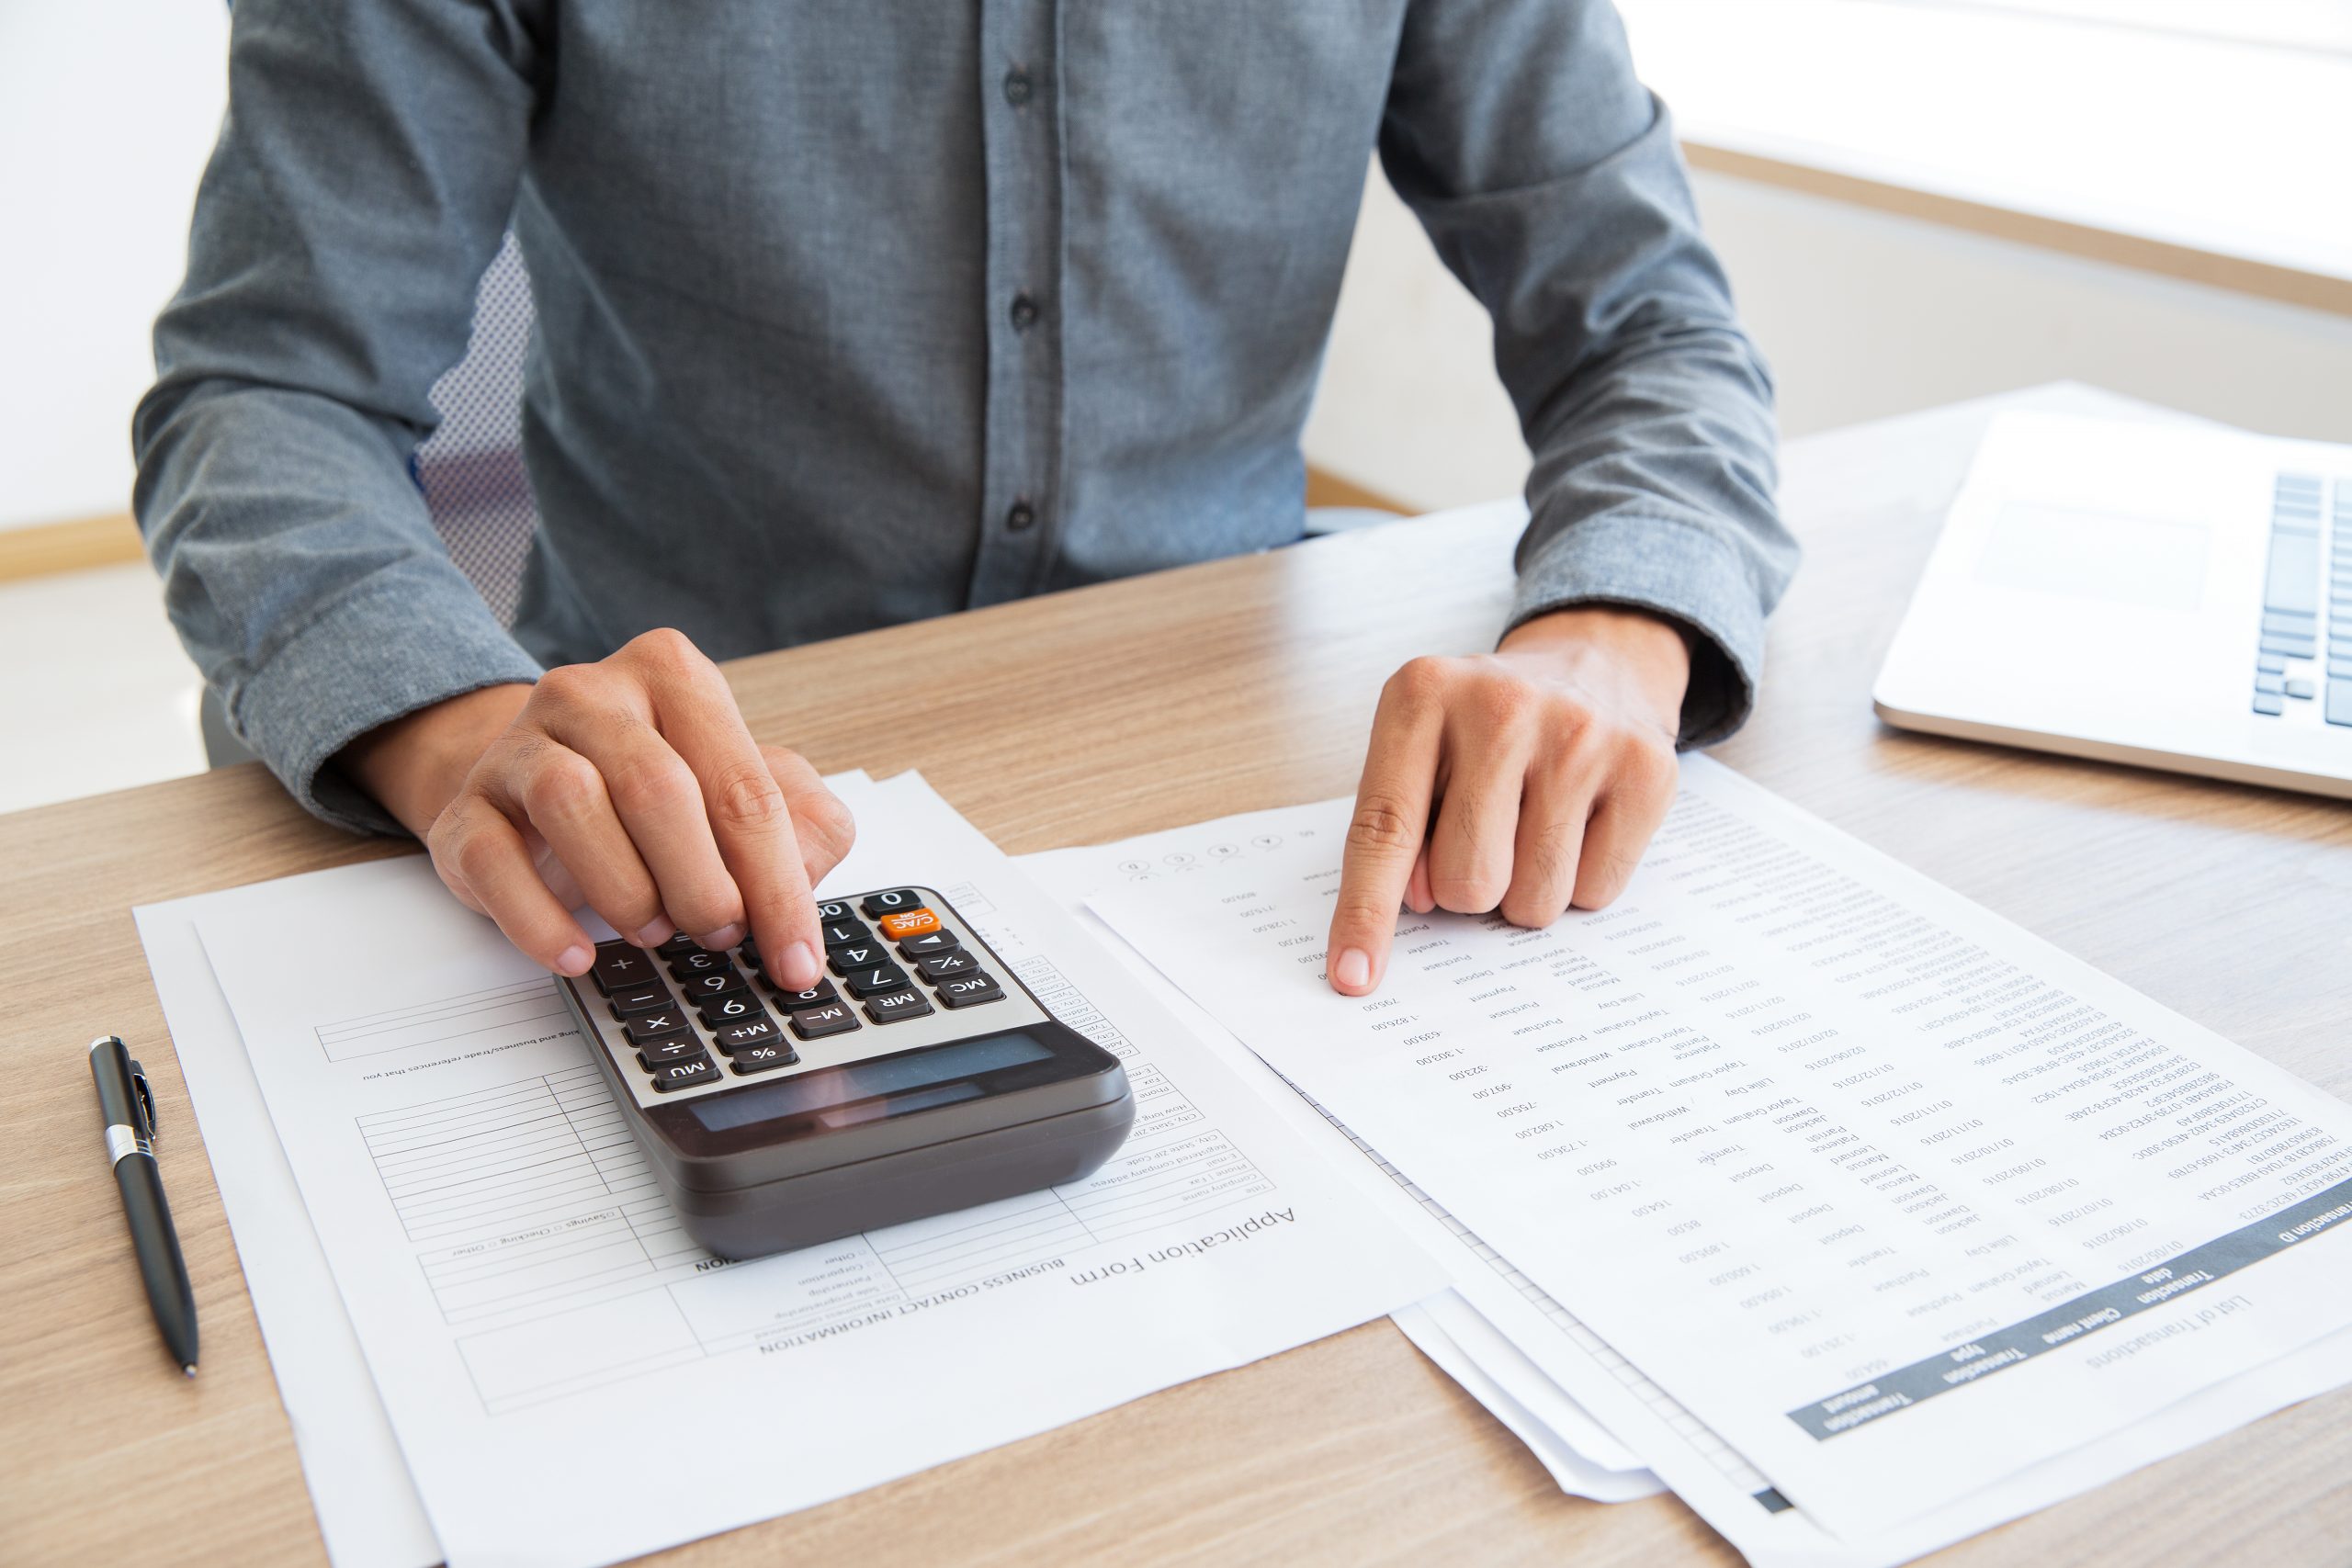 Foto de uma pessoa mexendo em uma calculadora em cima de uma pilha de papéis para a pauta: "Contas a pagar, uma das etapas mais complexas da administração condominial" para o Blog da Estasa